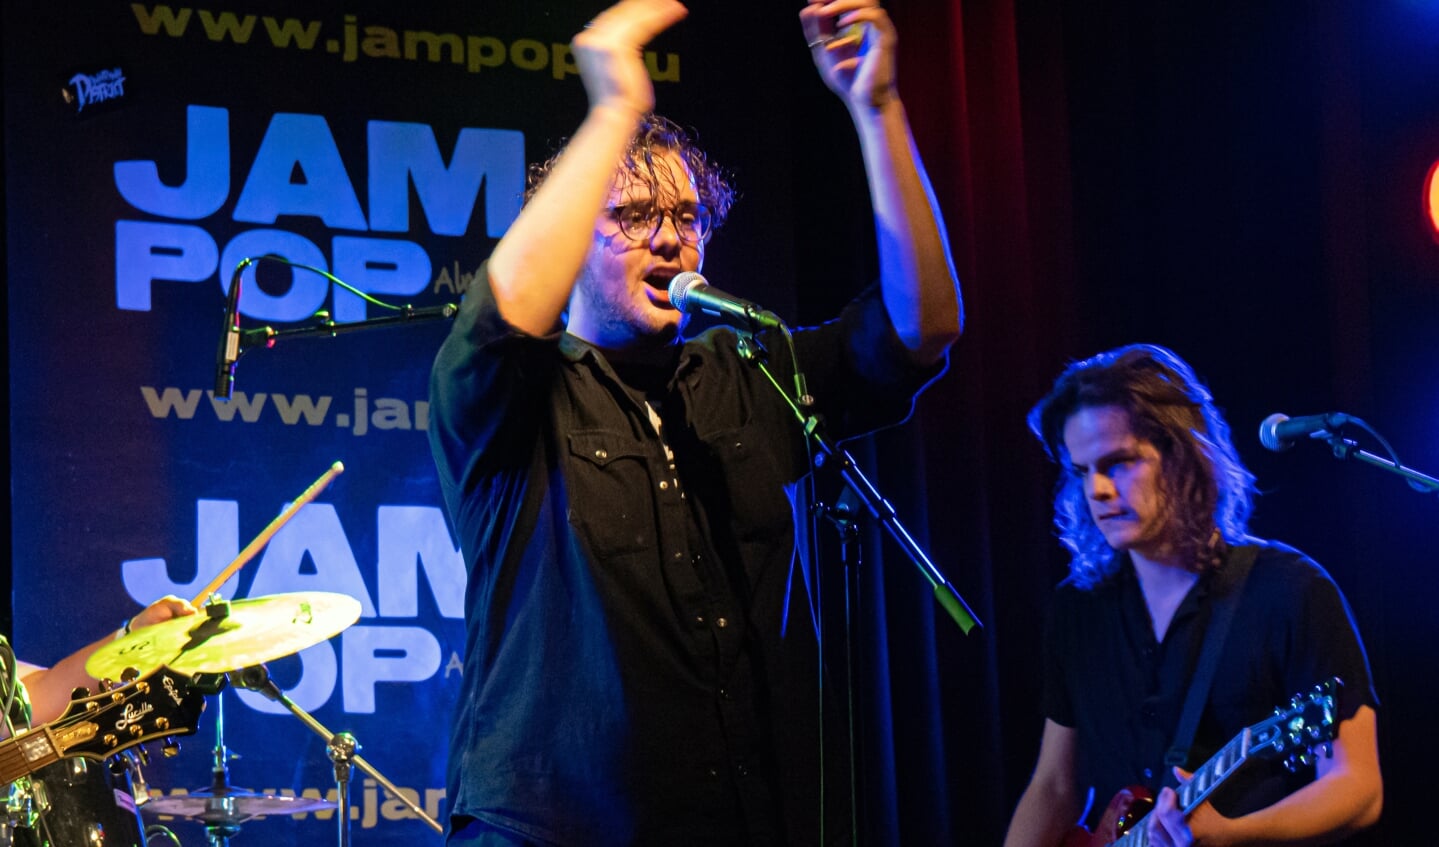 JamPop Live, Seizoen 2019-2020, Voorronde No 1